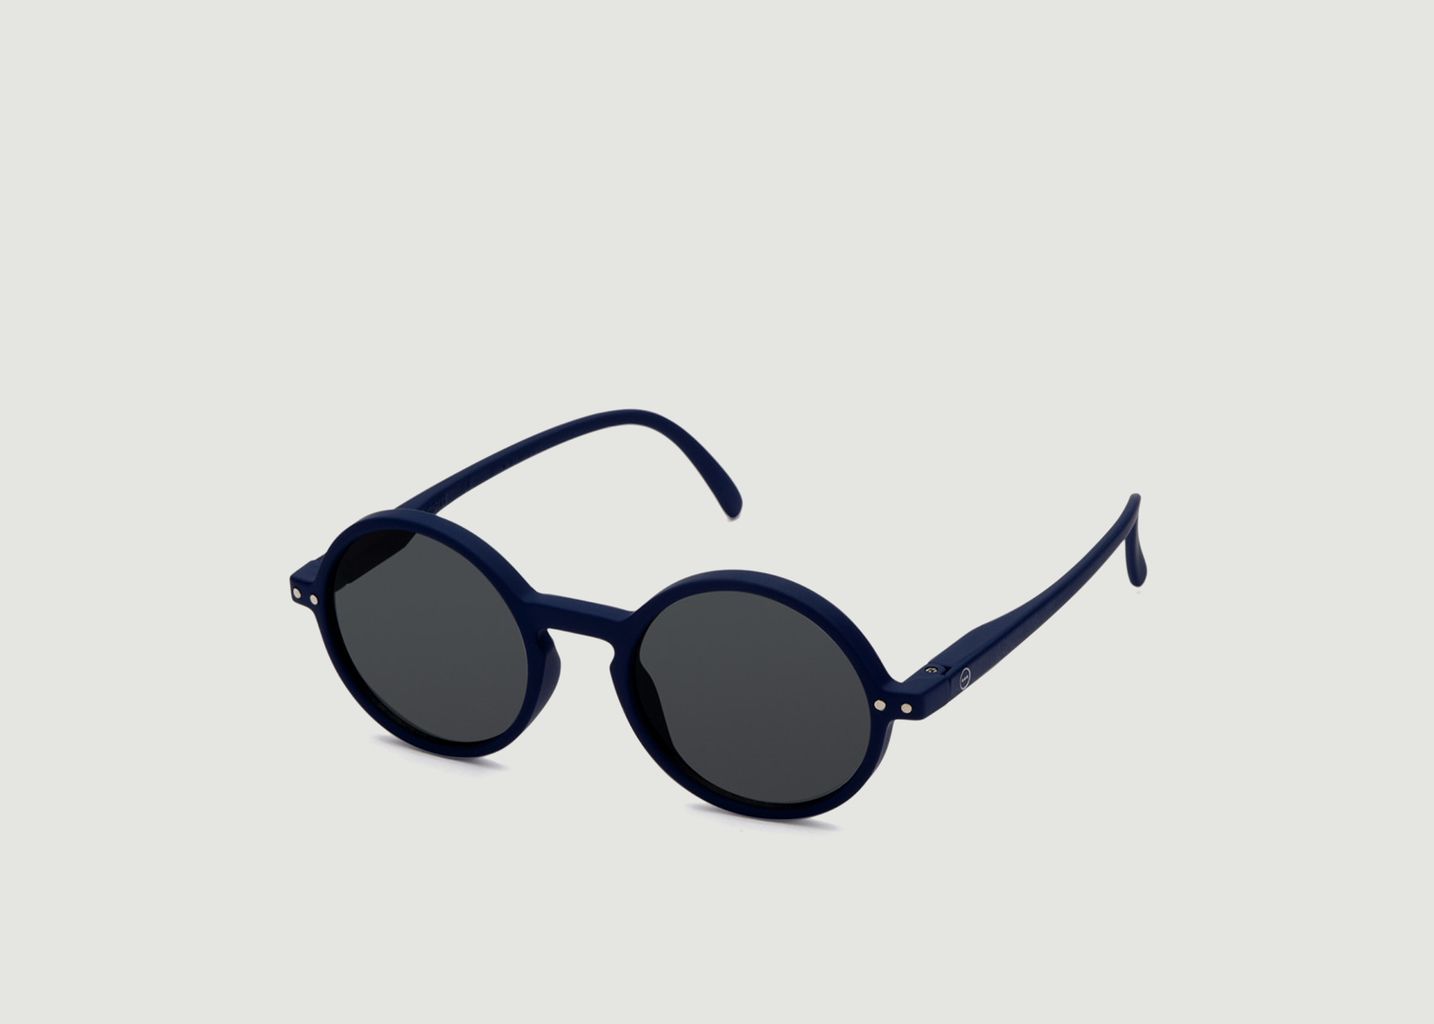 Junior Sunglasses - Izipizi